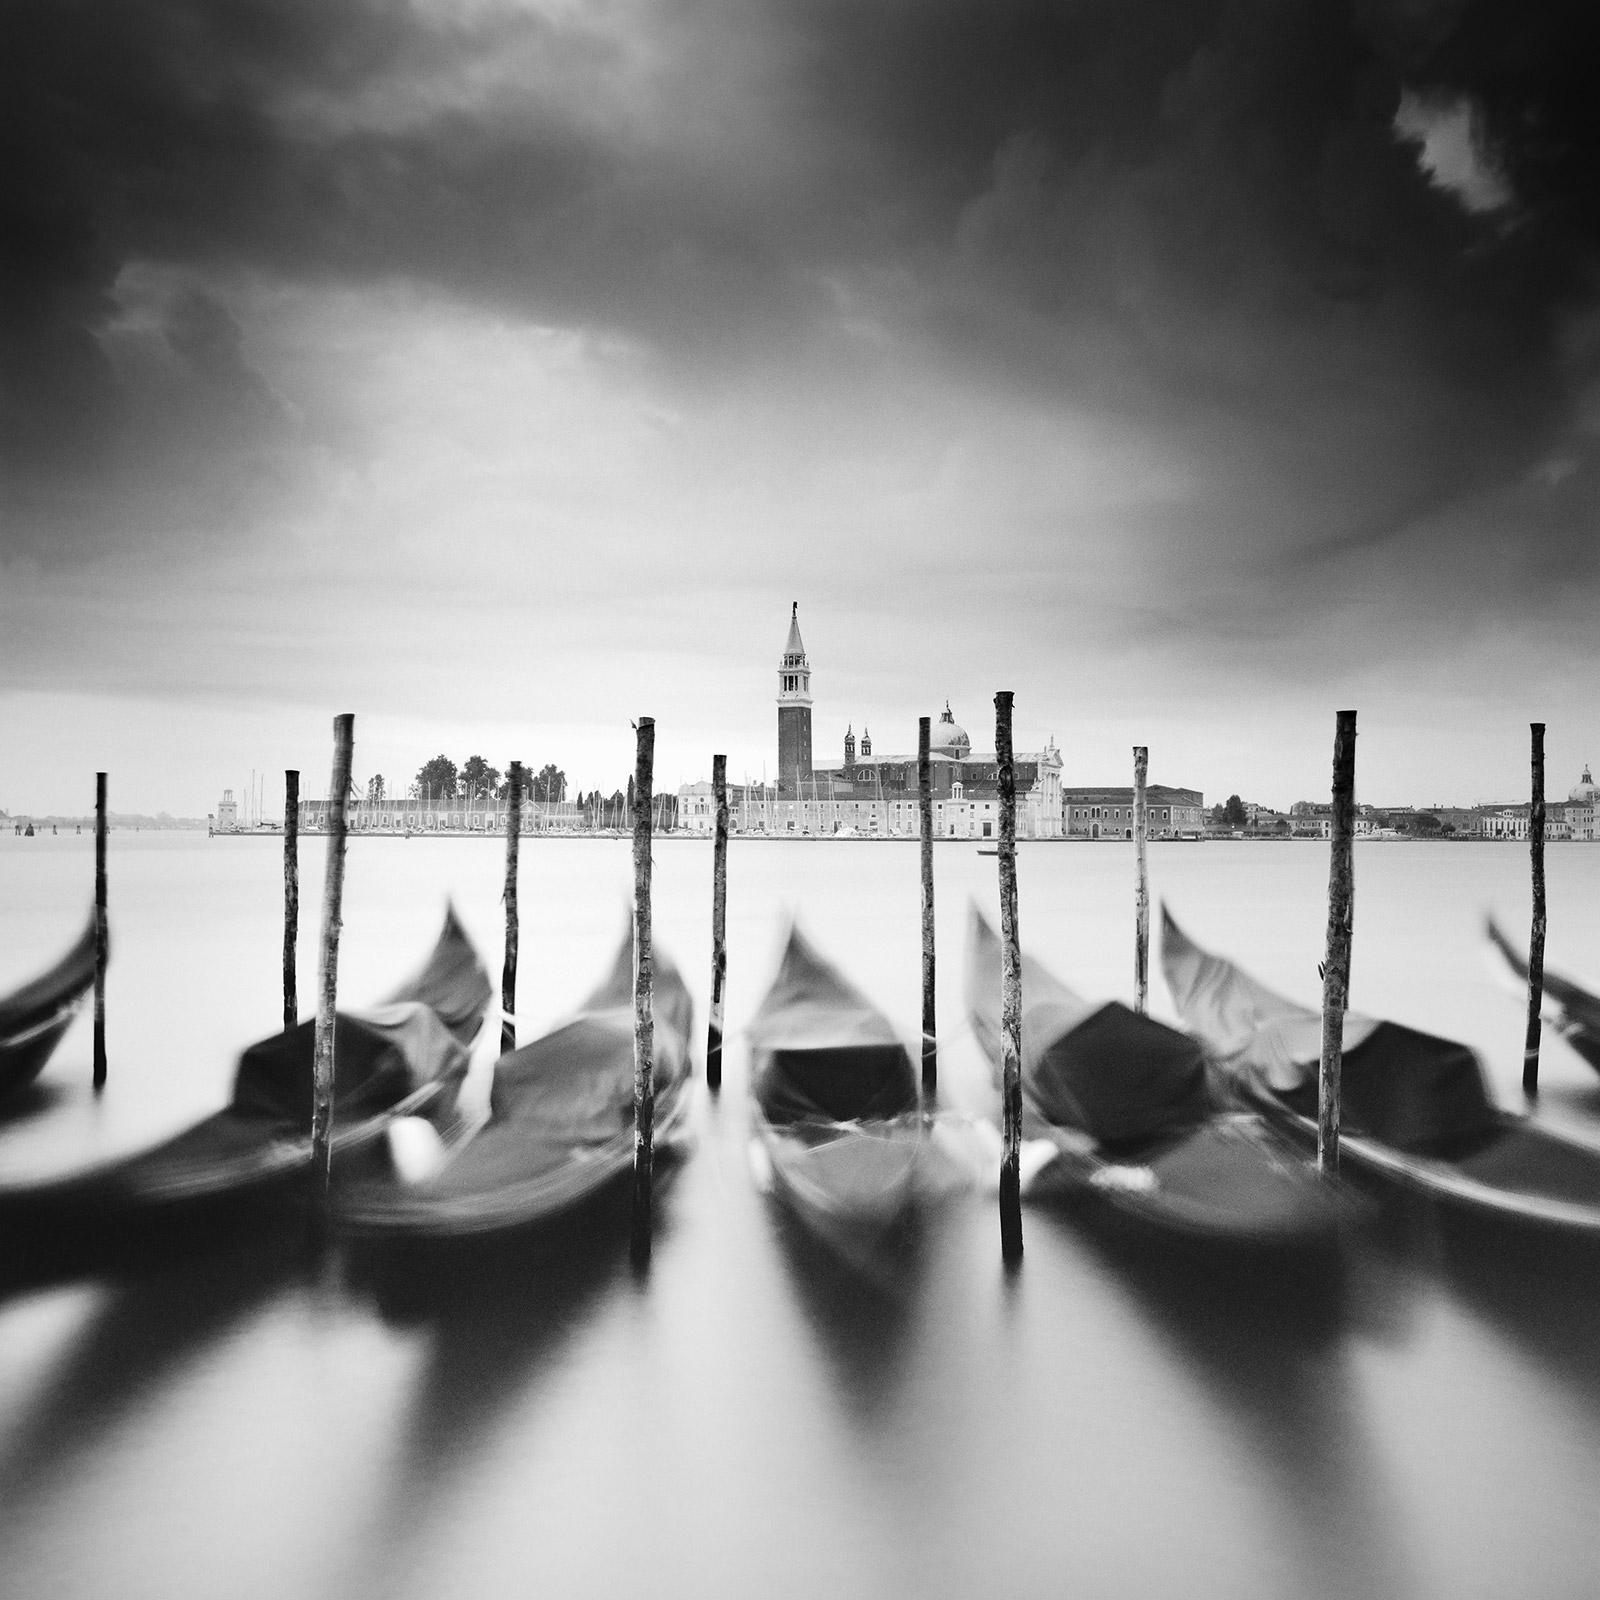   Basilica di San Giorgio Maggiore, Venice, black and white fine art photography